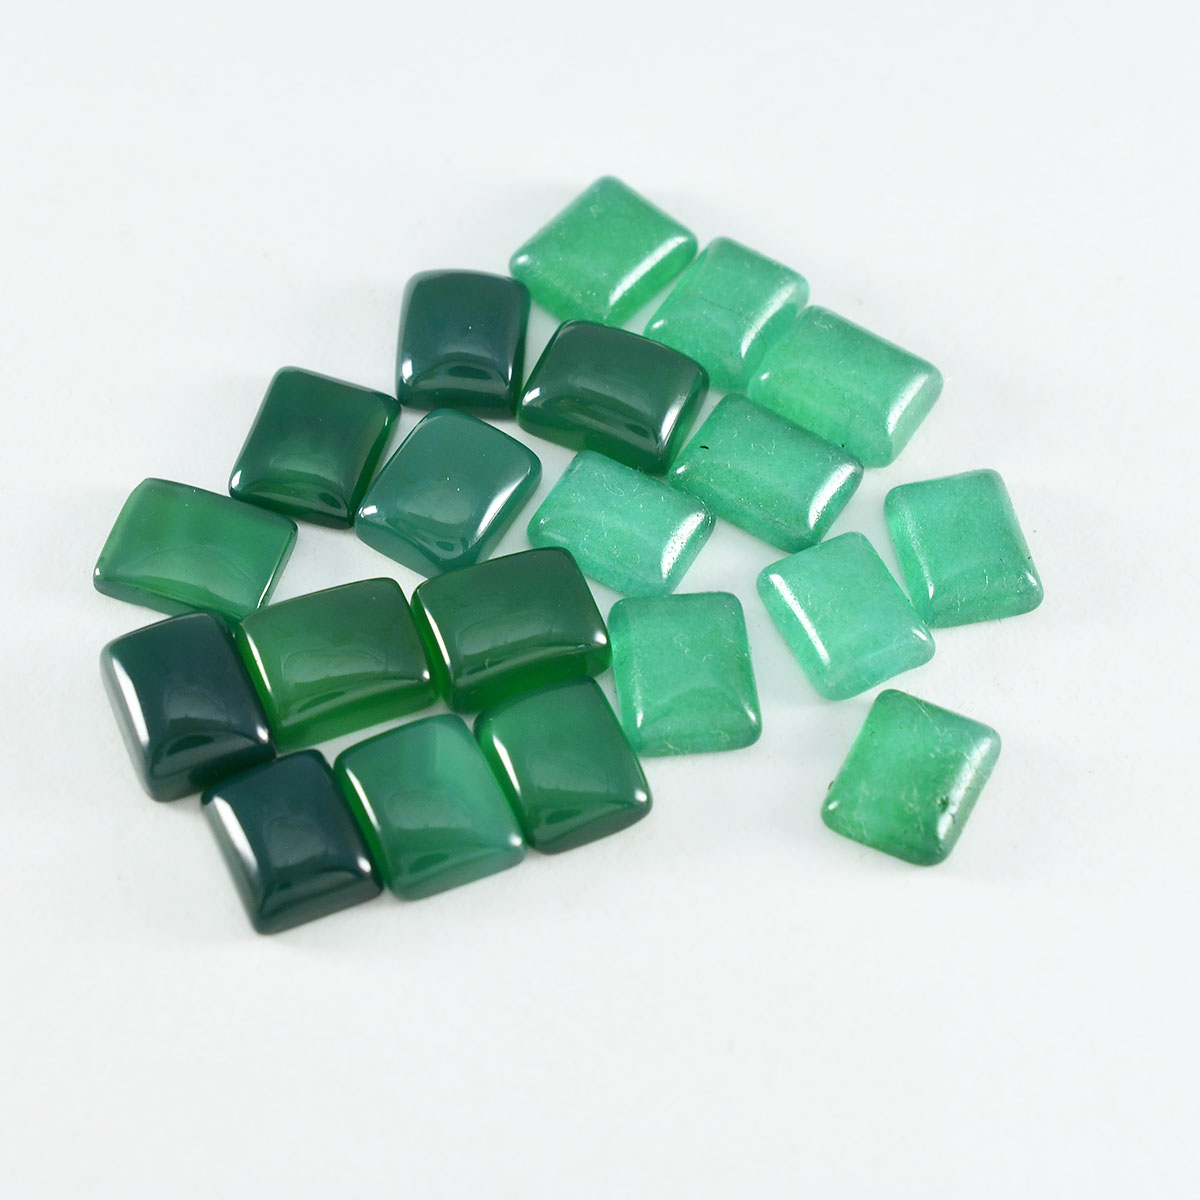 riyogems 1 шт., зеленый оникс, кабошон 6x8 мм, восьмиугольная форма, красивое качество, свободные драгоценные камни